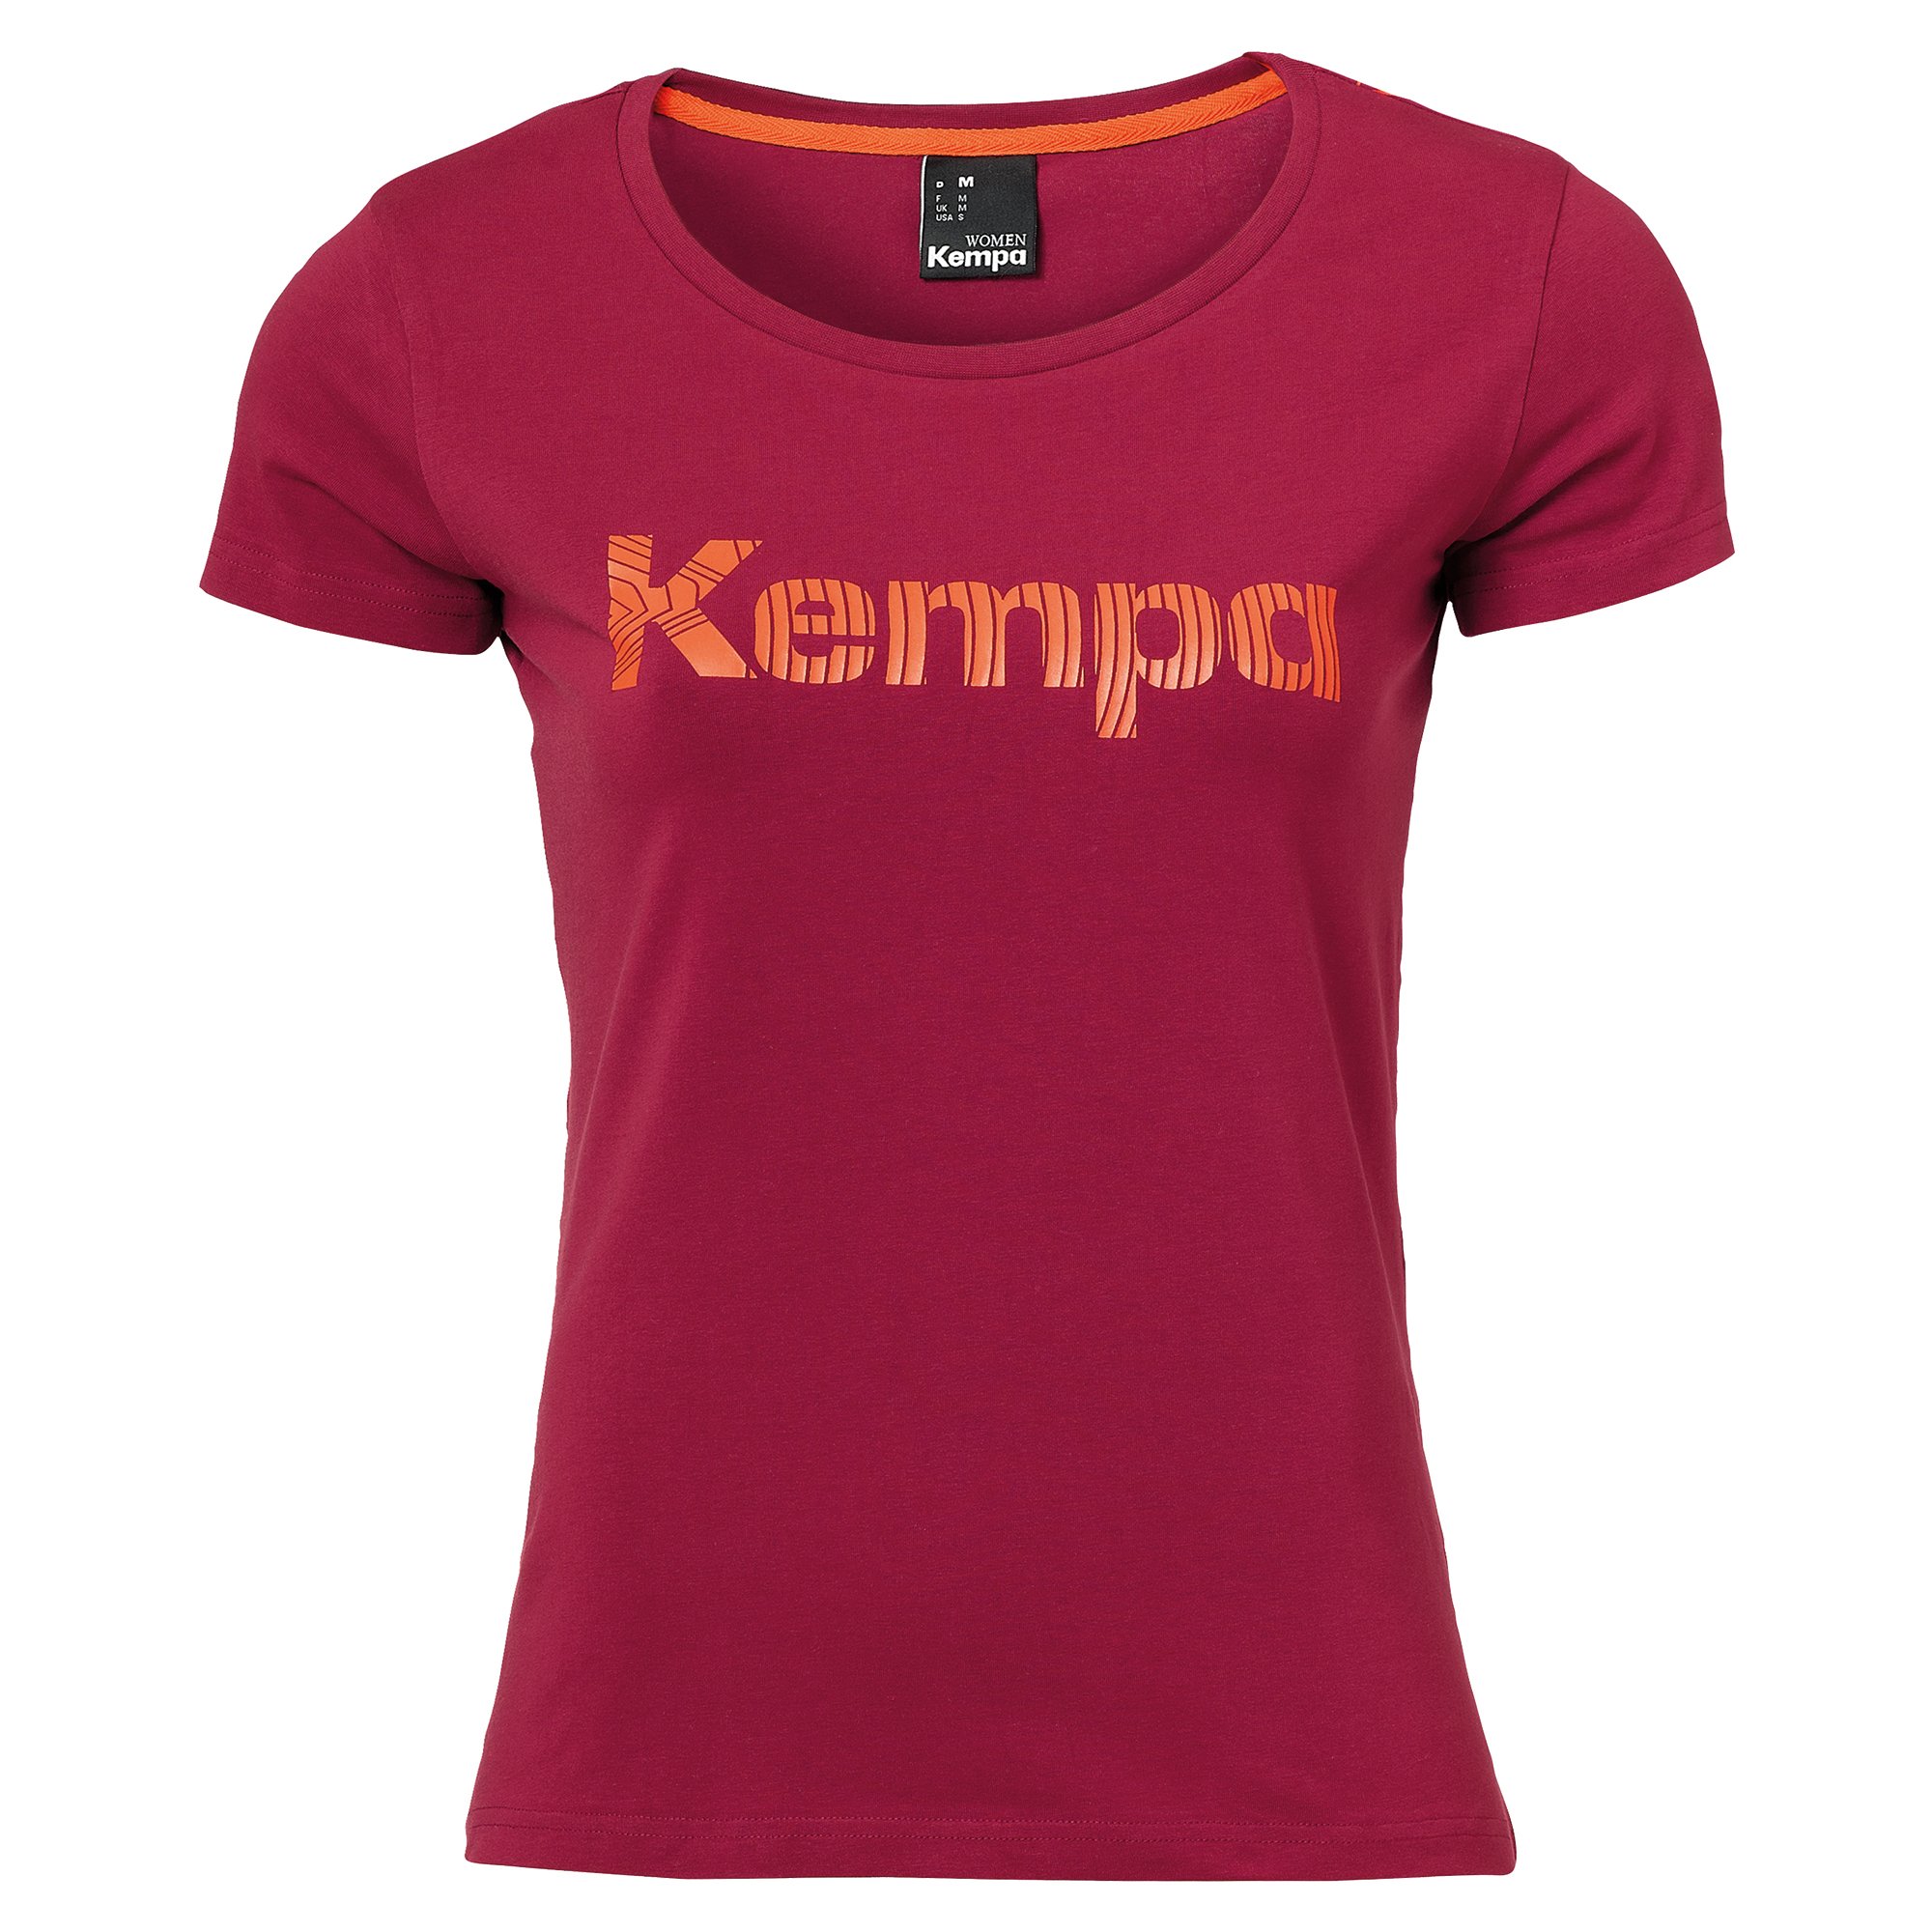 Kempa Graphic T-Shirt Damen